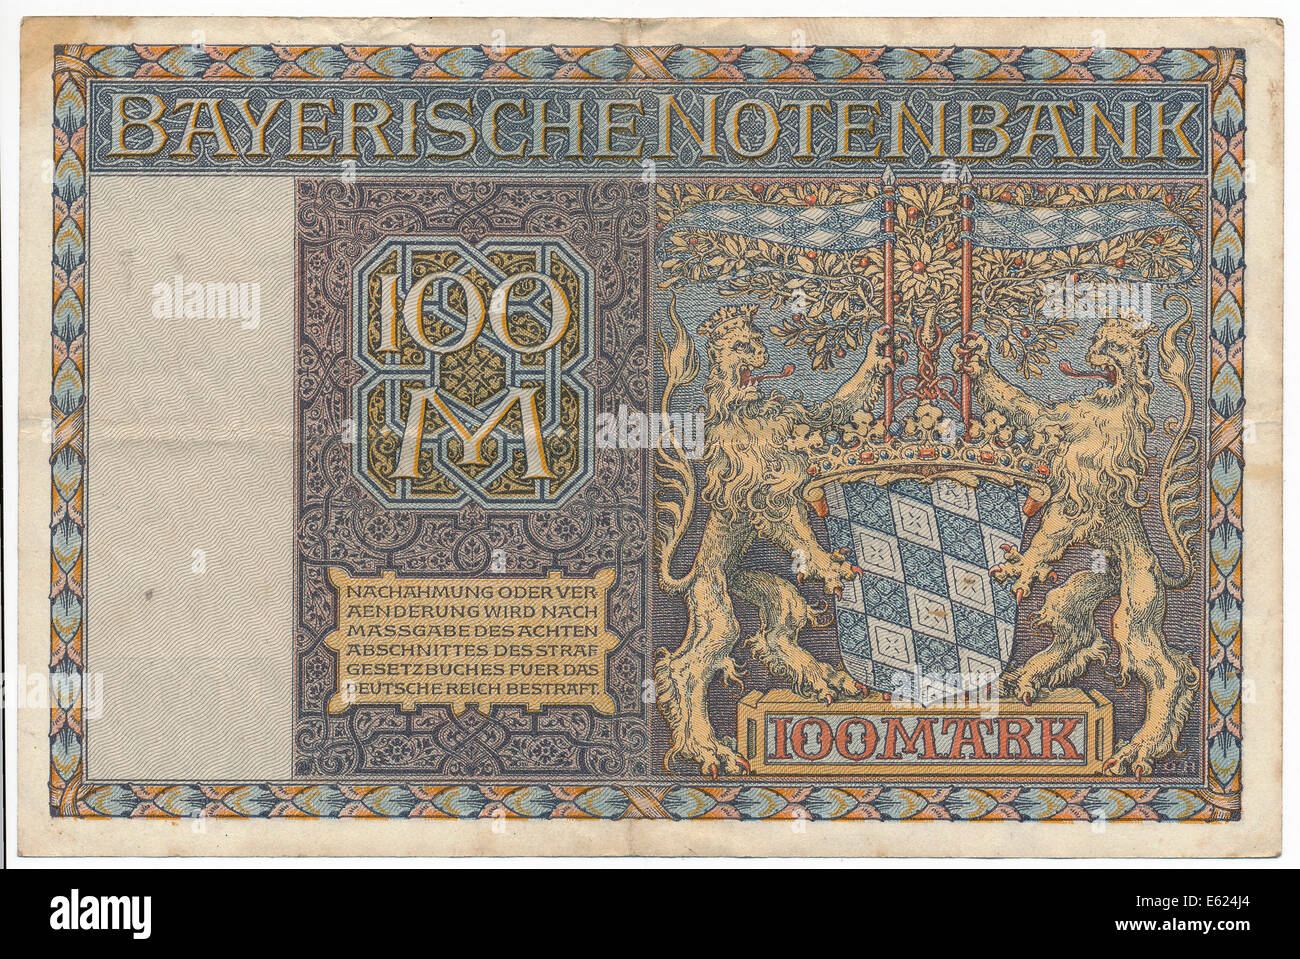 Vecchia banconota 100 marchi, retro, Bayerische Notenbank, bavarese di banca centrale, 1922 Foto Stock